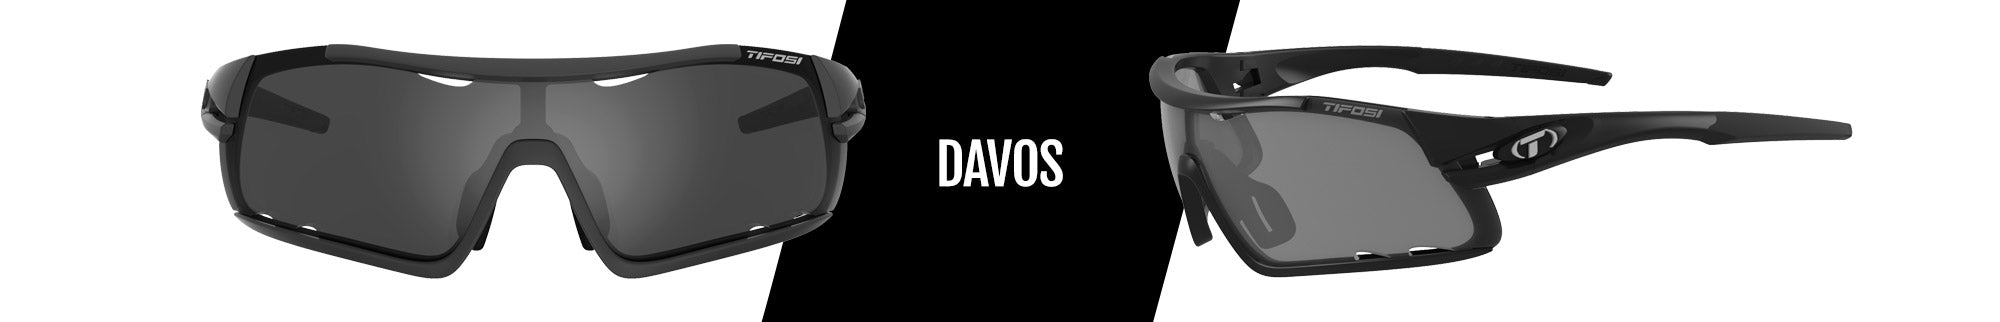 Gafas de sol Tifosi Davos